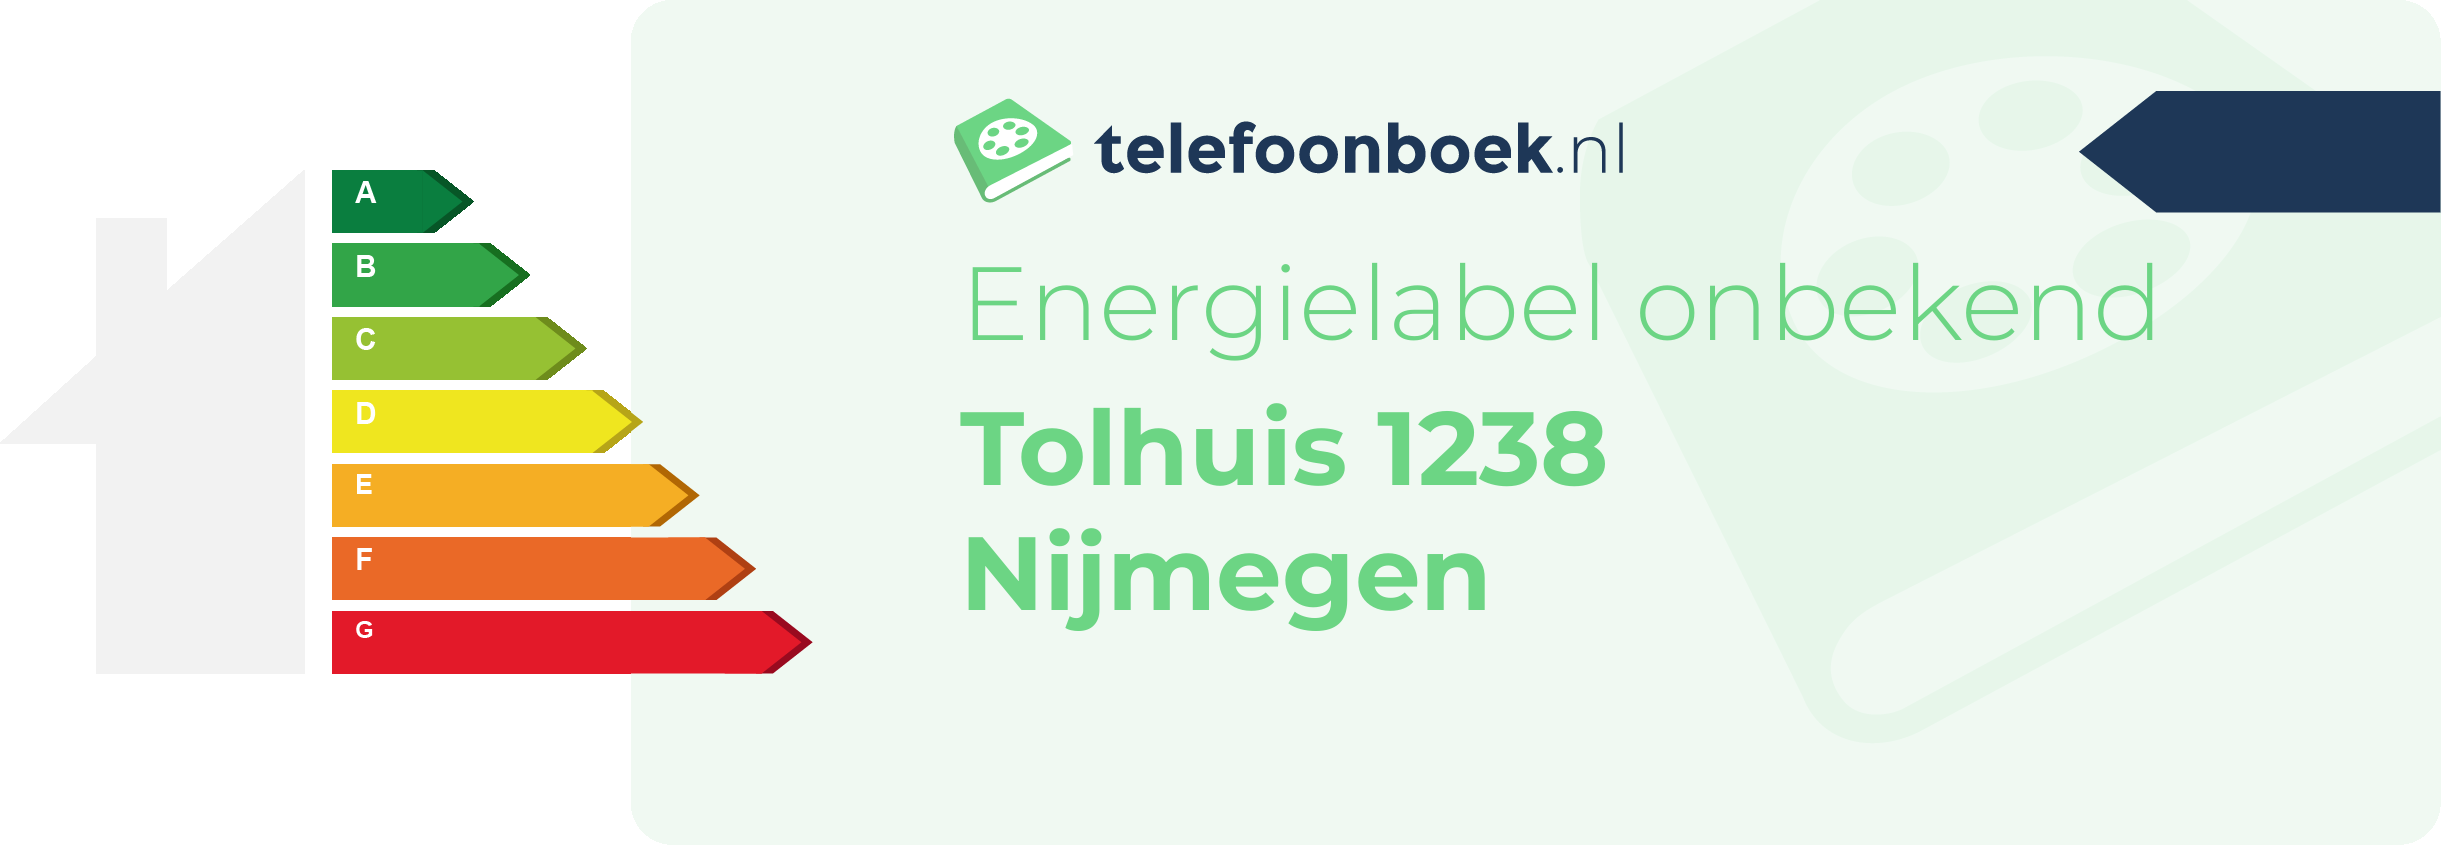 Energielabel Tolhuis 1238 Nijmegen